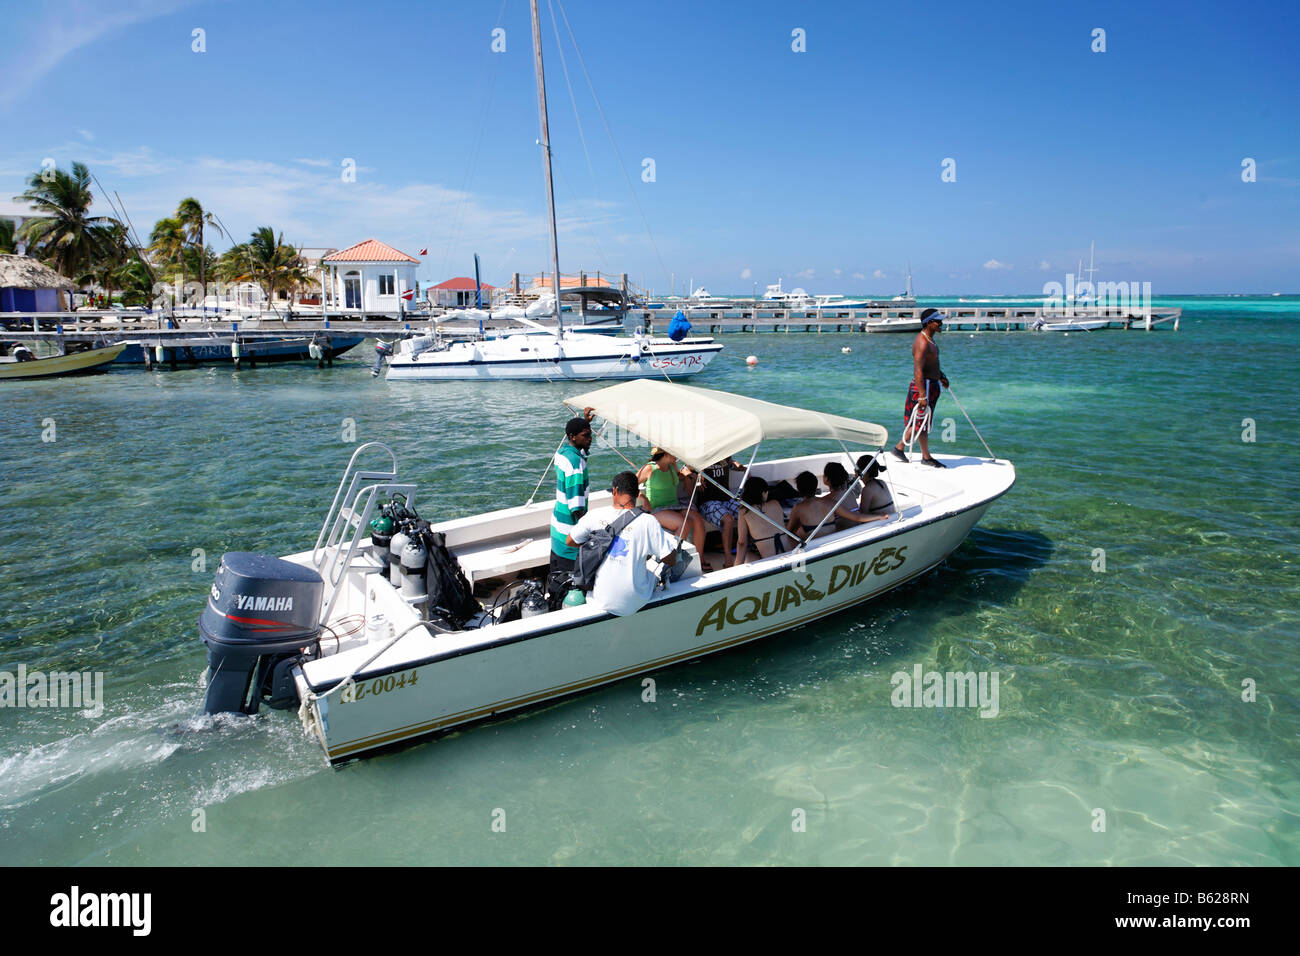 Bateau de plongée chargé avec les plongeurs sous-chefs en mer, San Pedro, Ambergris Cay Island, Belize, Amérique Centrale, Caraïbes Banque D'Images